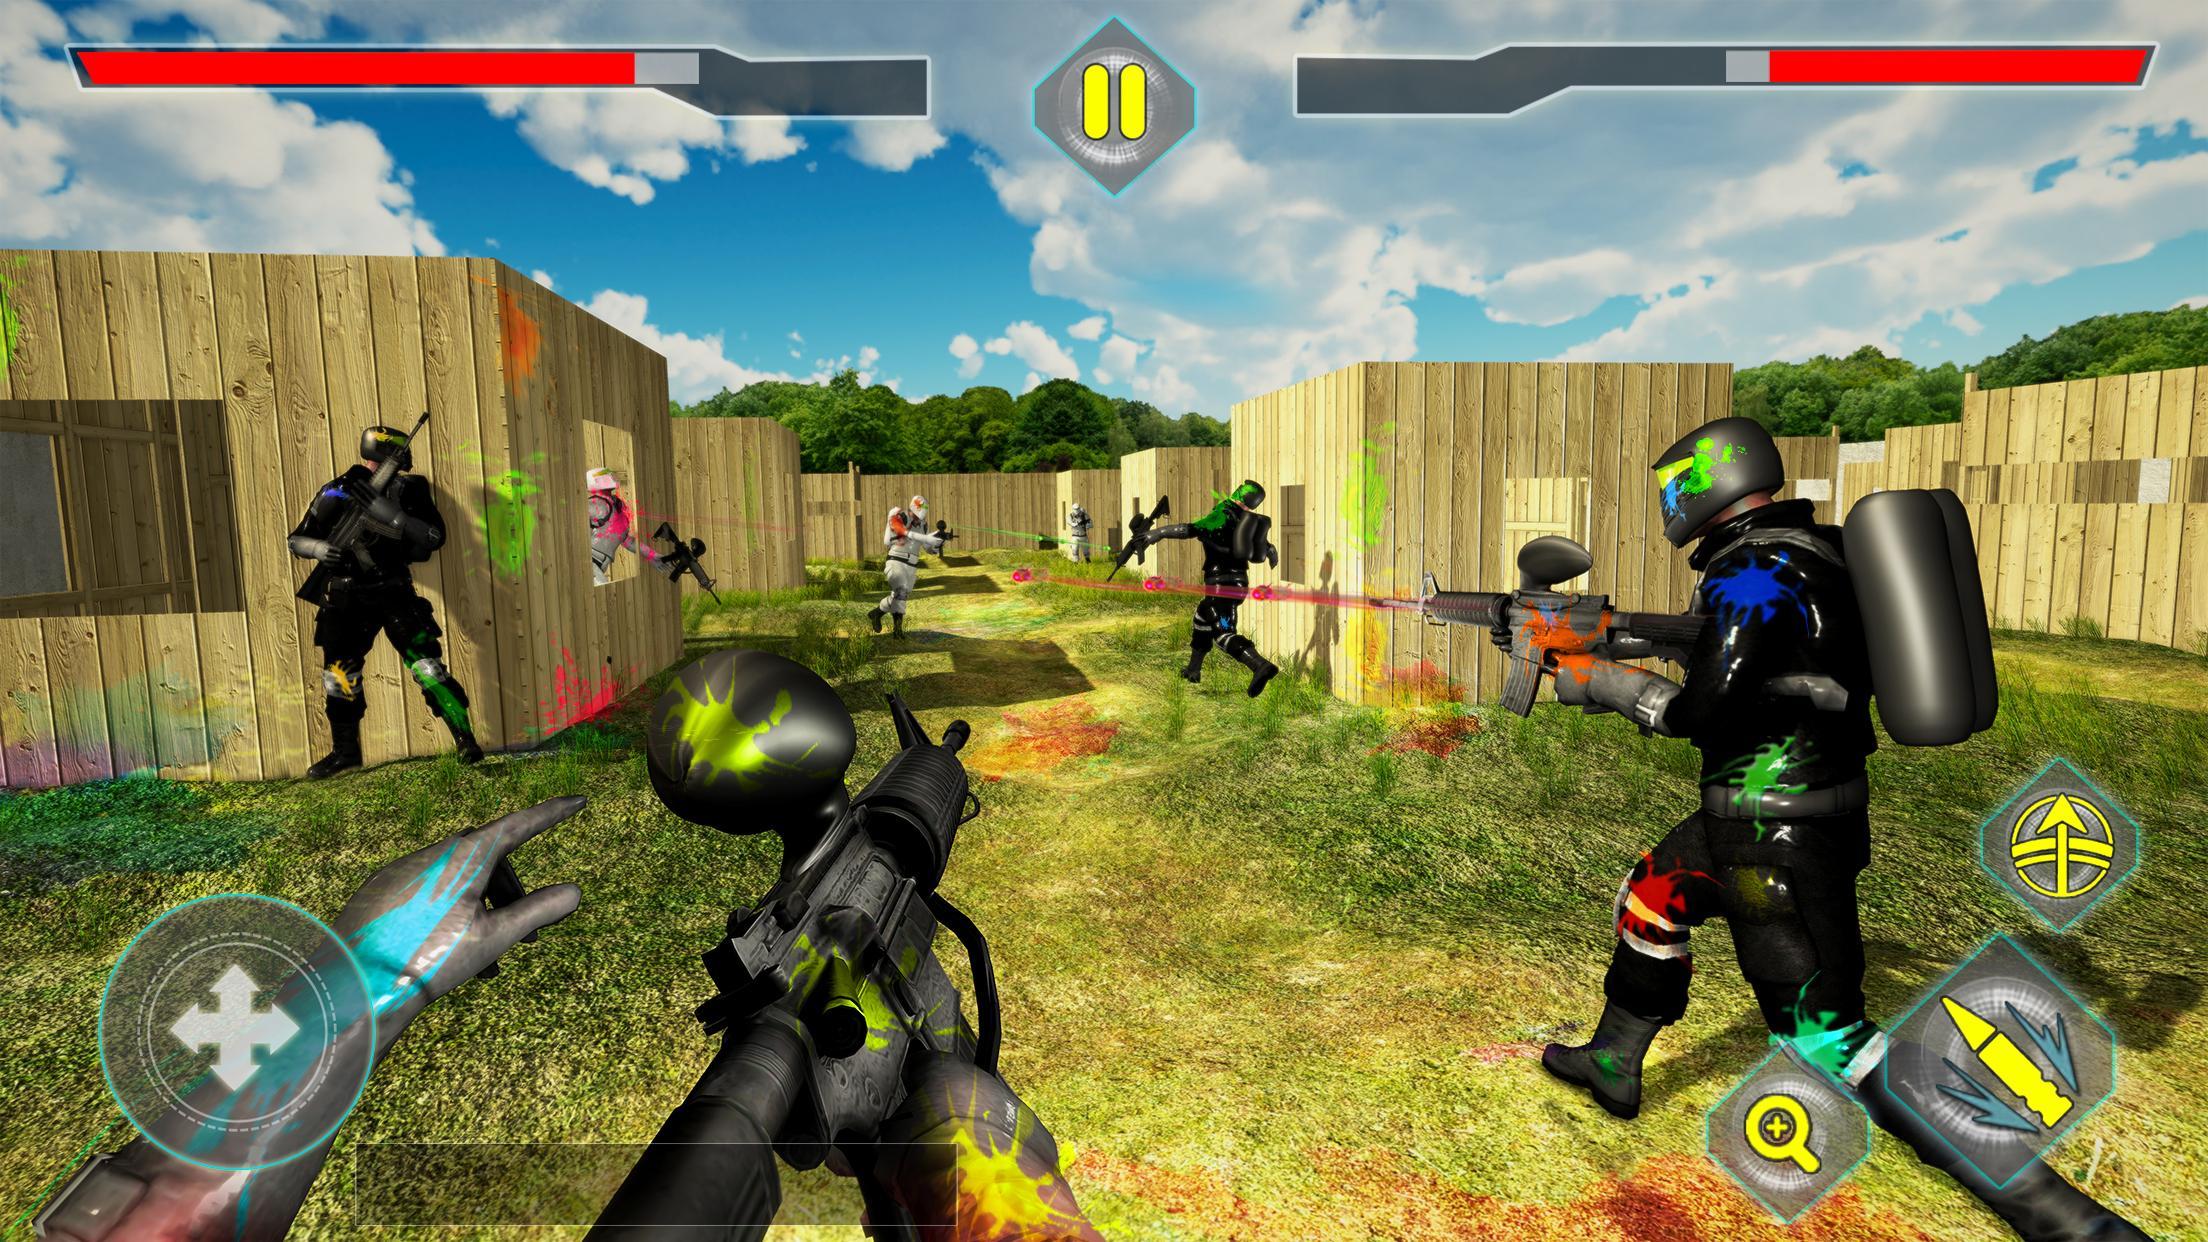 Screenshot 1 of Đấu trường bắn súng sơn: Chiến trường thực chiến 1.1.4